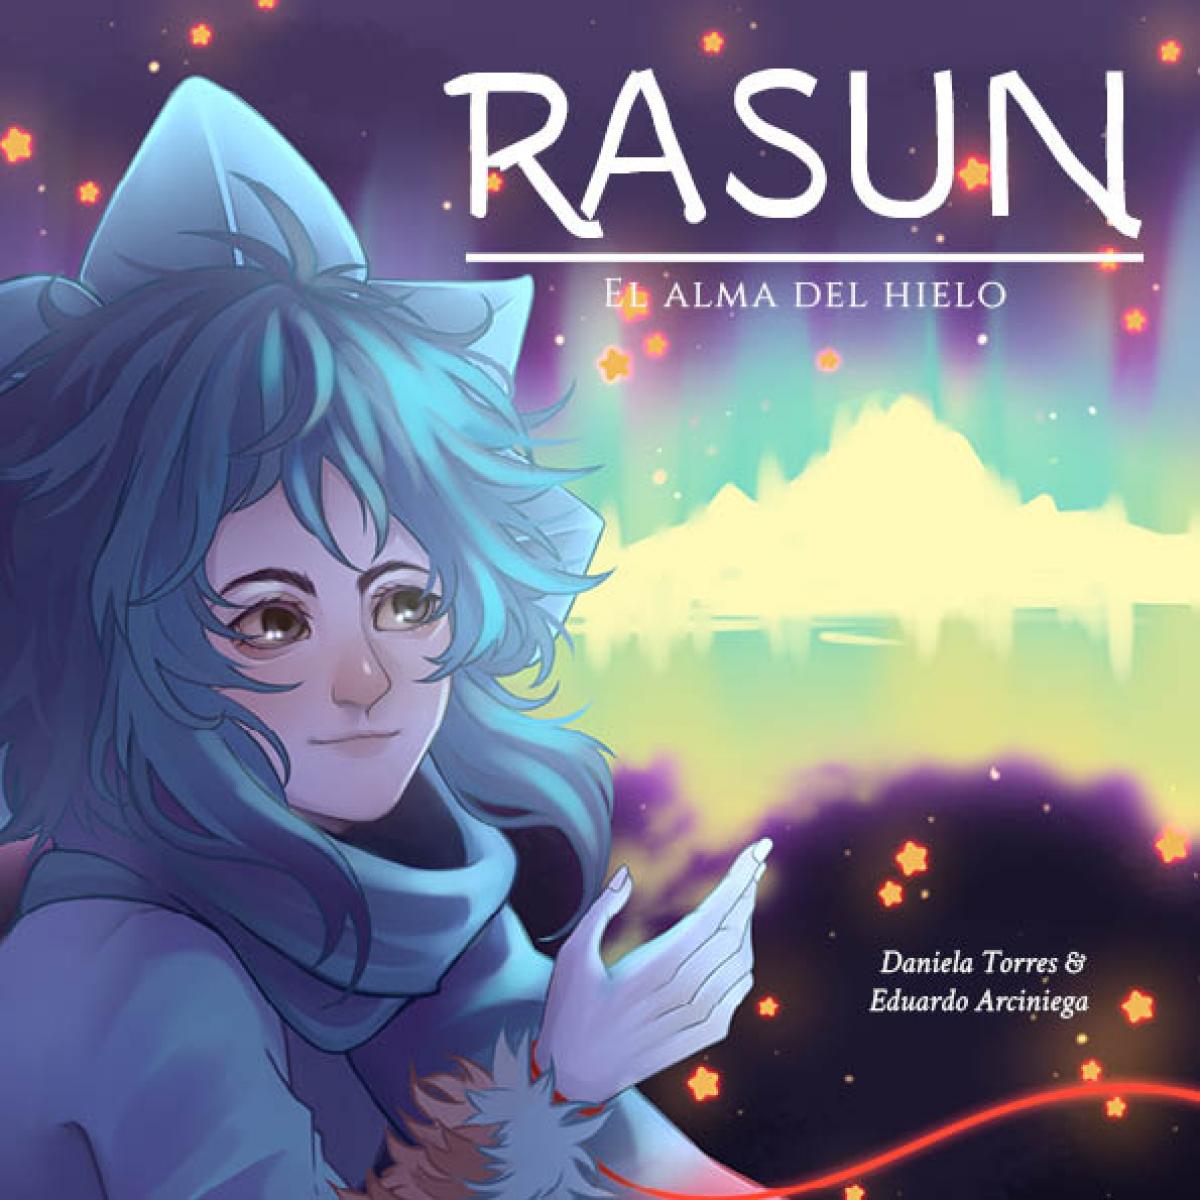 Rasun, el alma del hielo